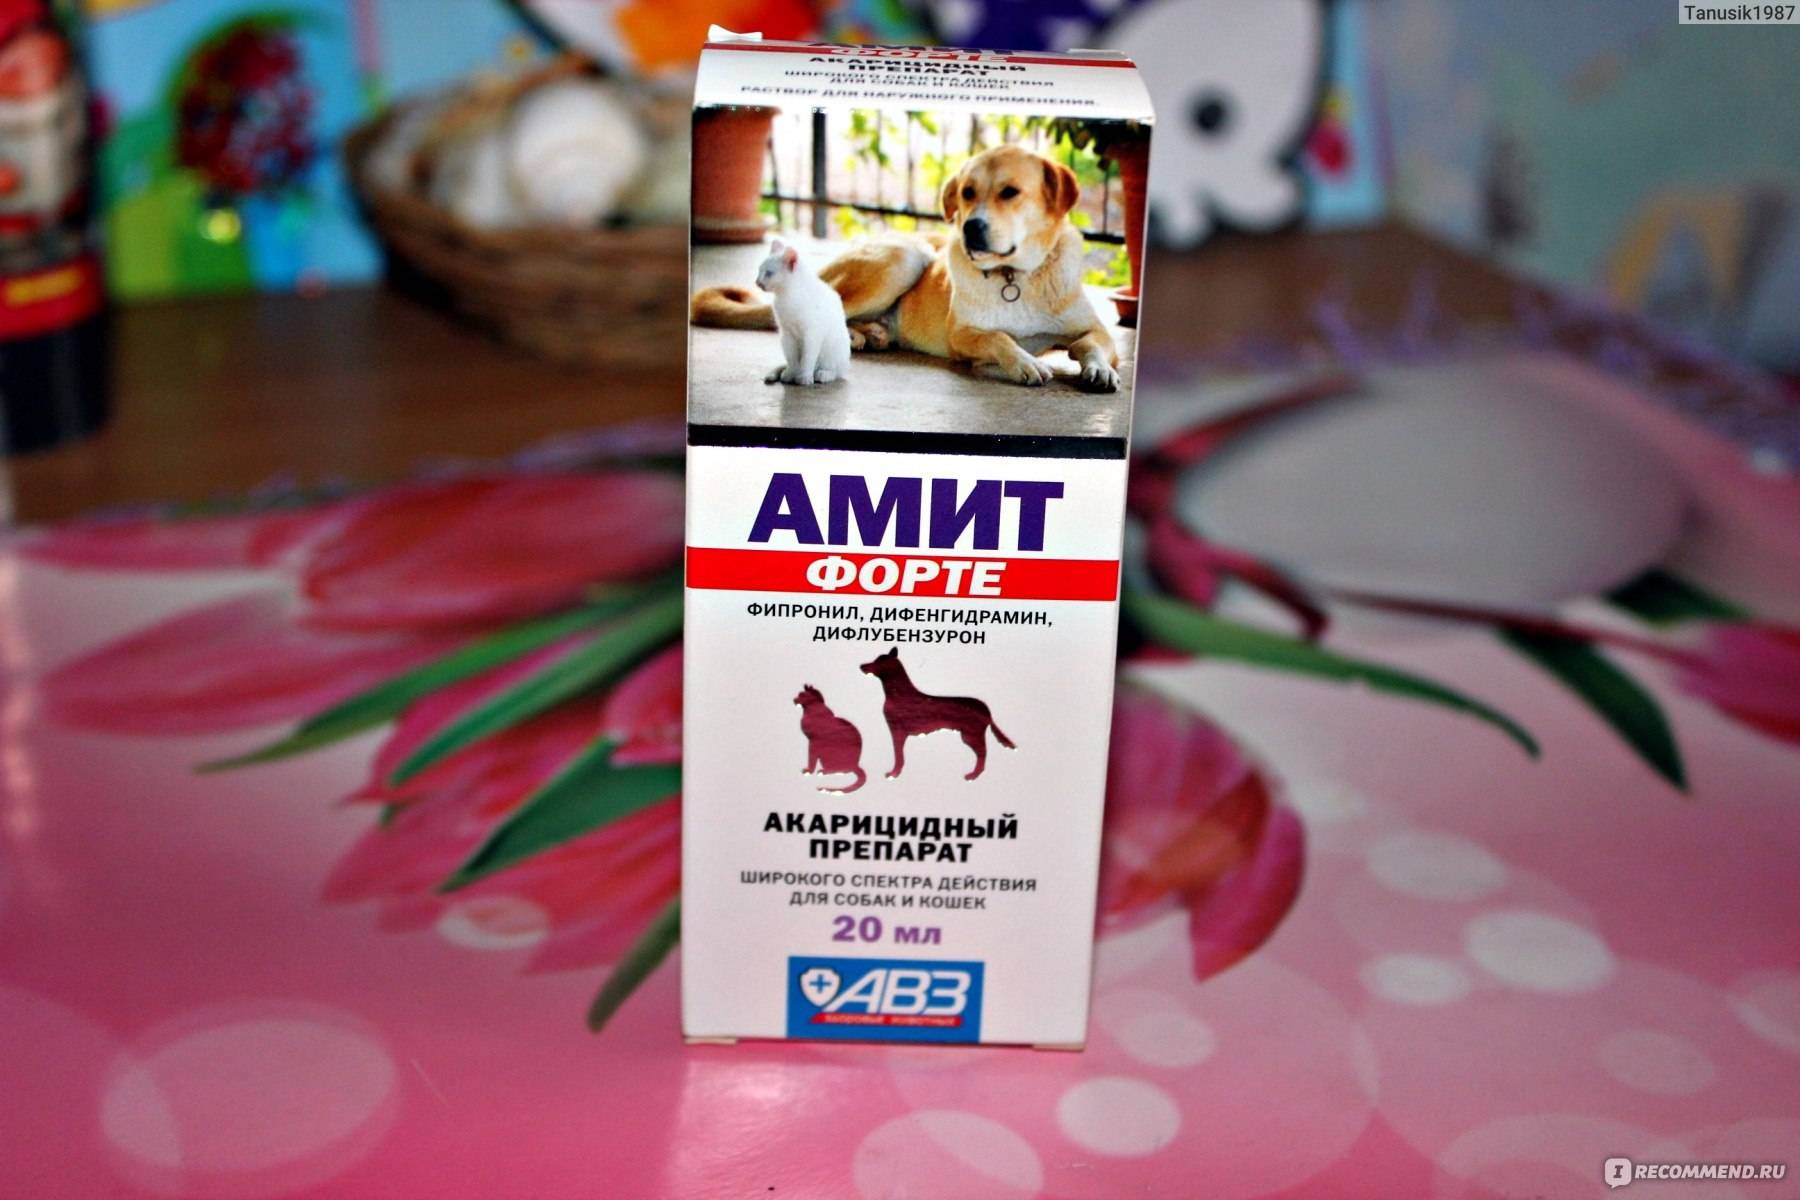 Ветеринарный препарат Амитразин: когда и как его применять